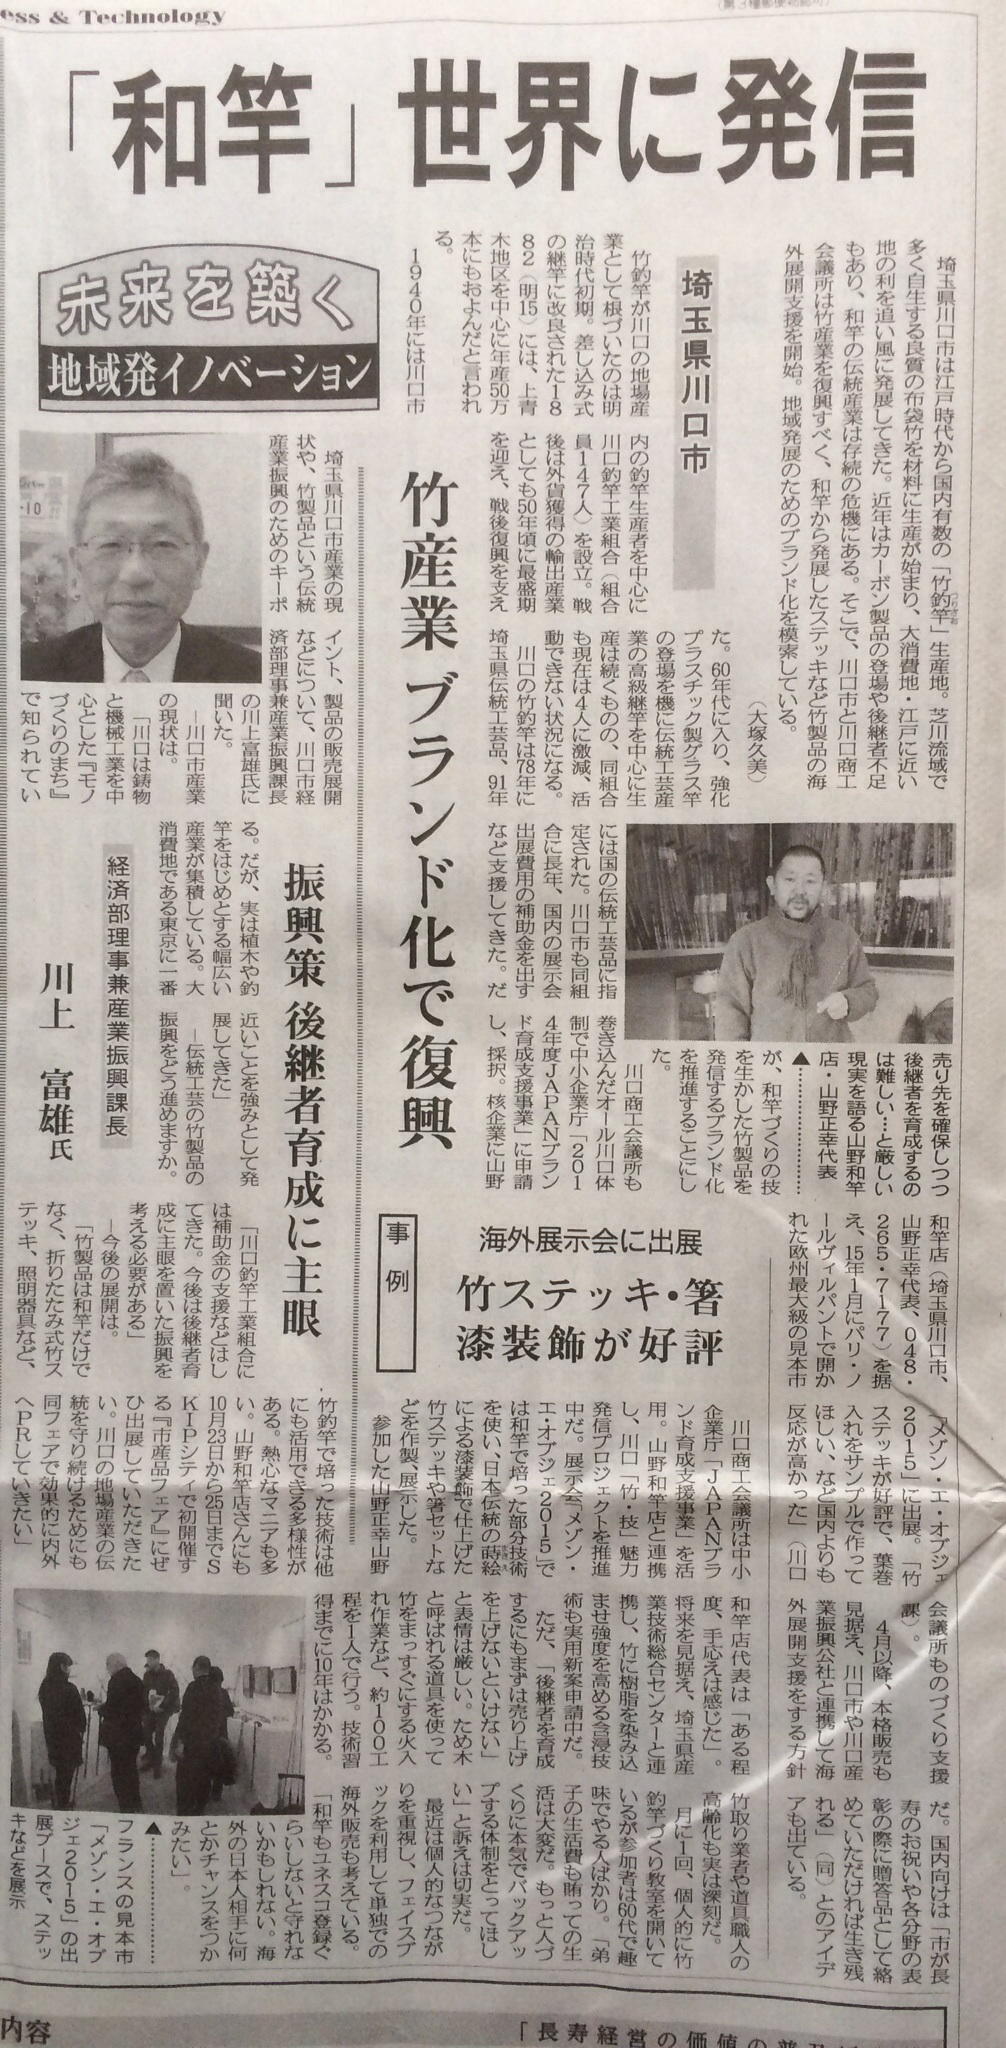 2015.03.18 日刊工業新聞 〜『和竿』世界に発信